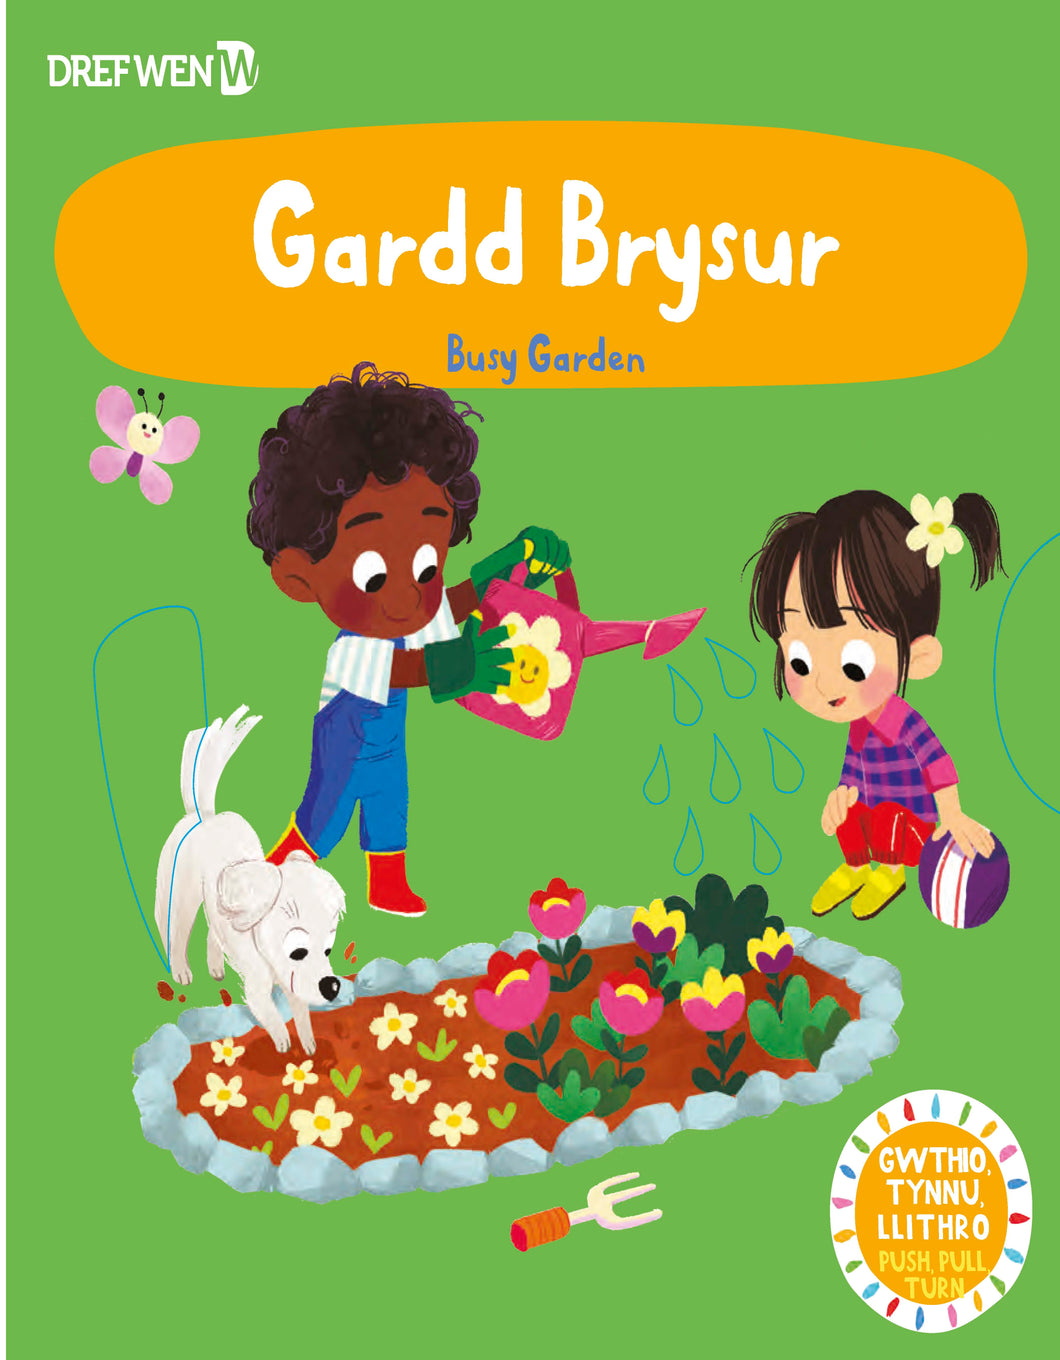 Gardd Brysur / Busy Garden